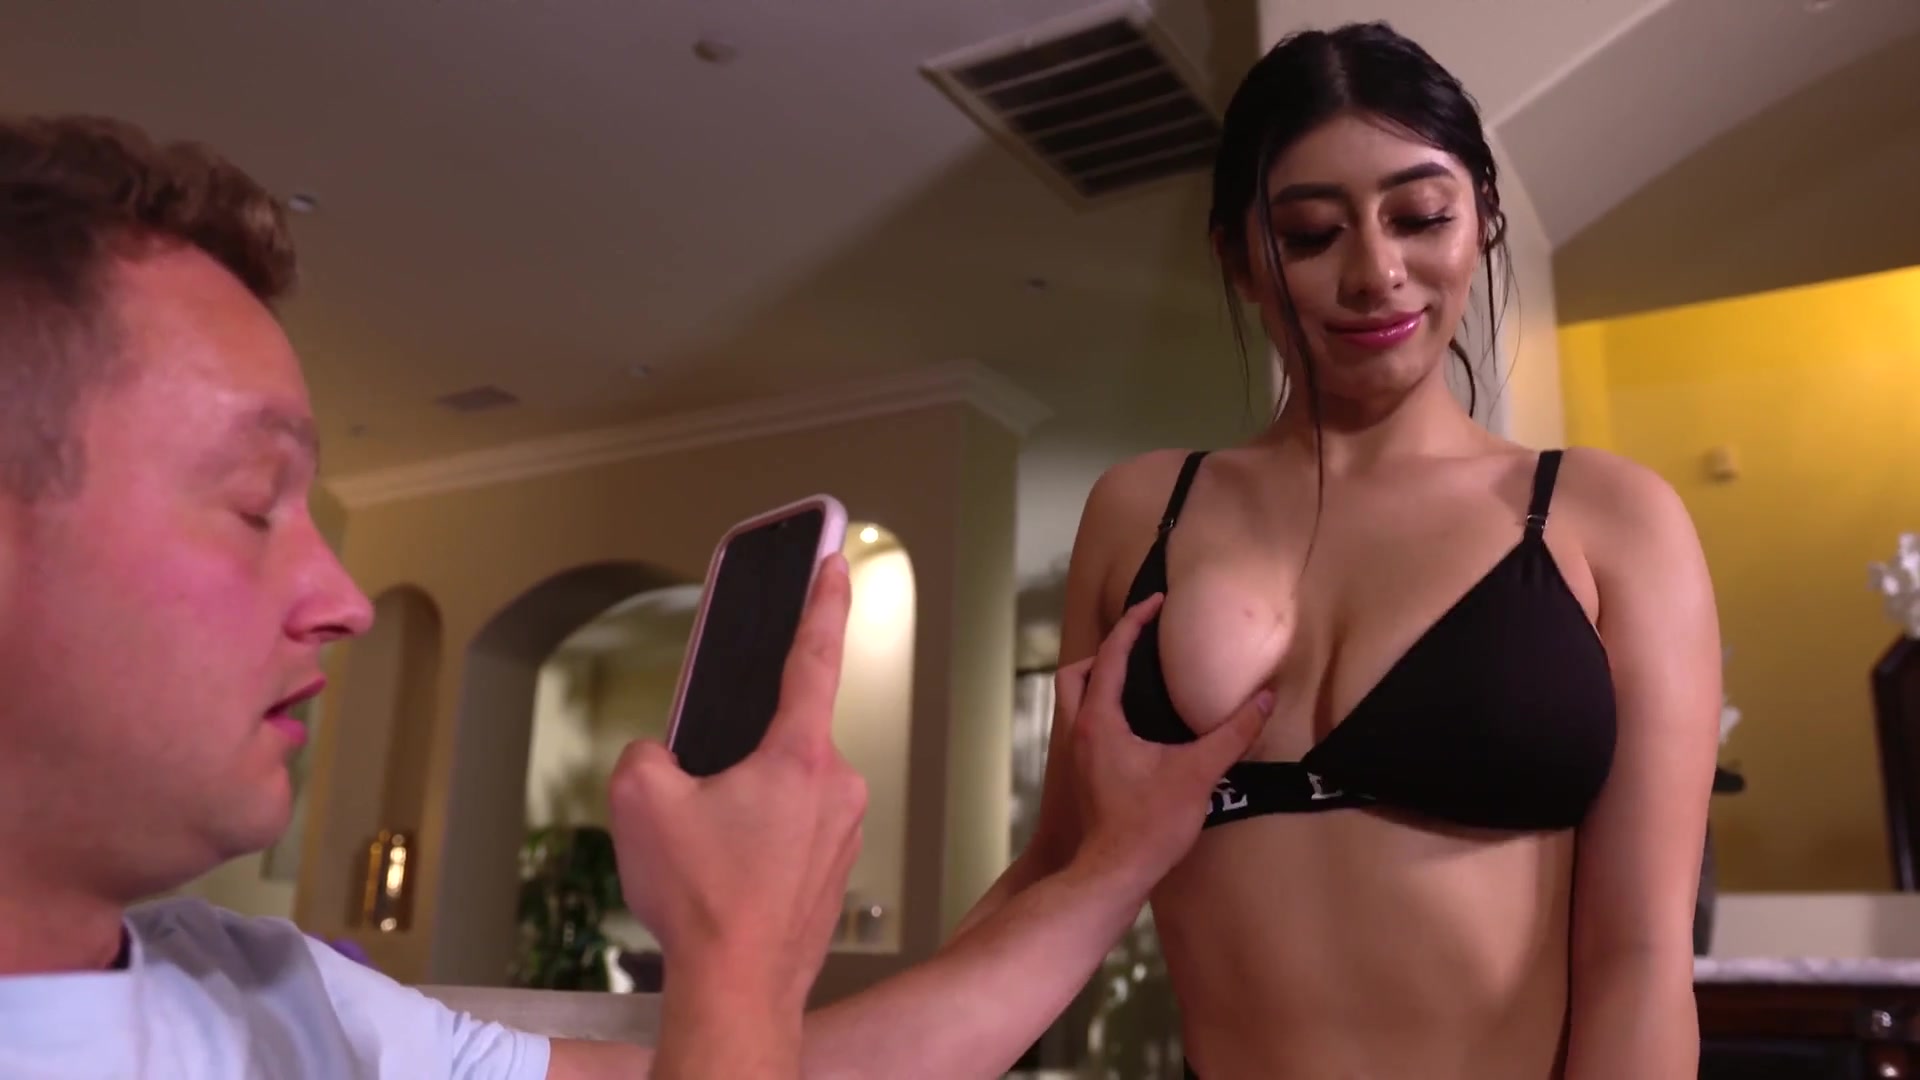 1920px x 1080px - Huge Sweaty Bikini Tits - Mia Khalifa Porn Video